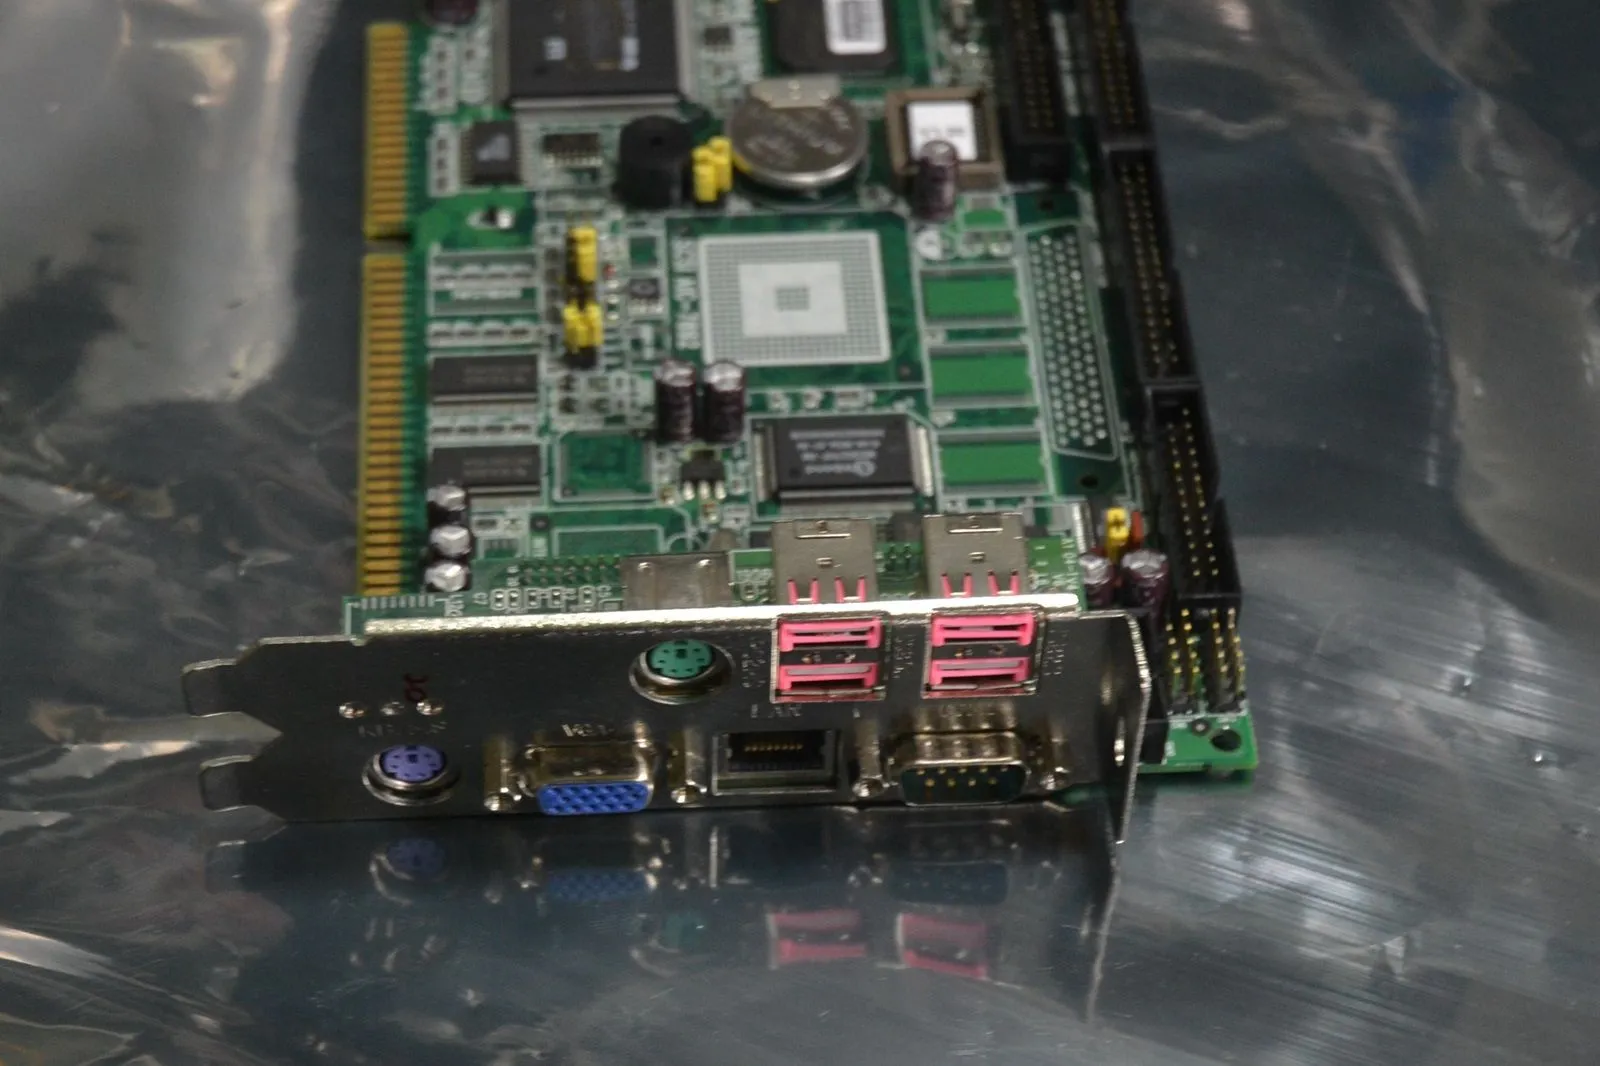 Оригинальная промышленная материнская плата Advantech PCA-6180E SBC Одноплатный компьютер 100% проверен, работает, используется, в хорошем состоянии